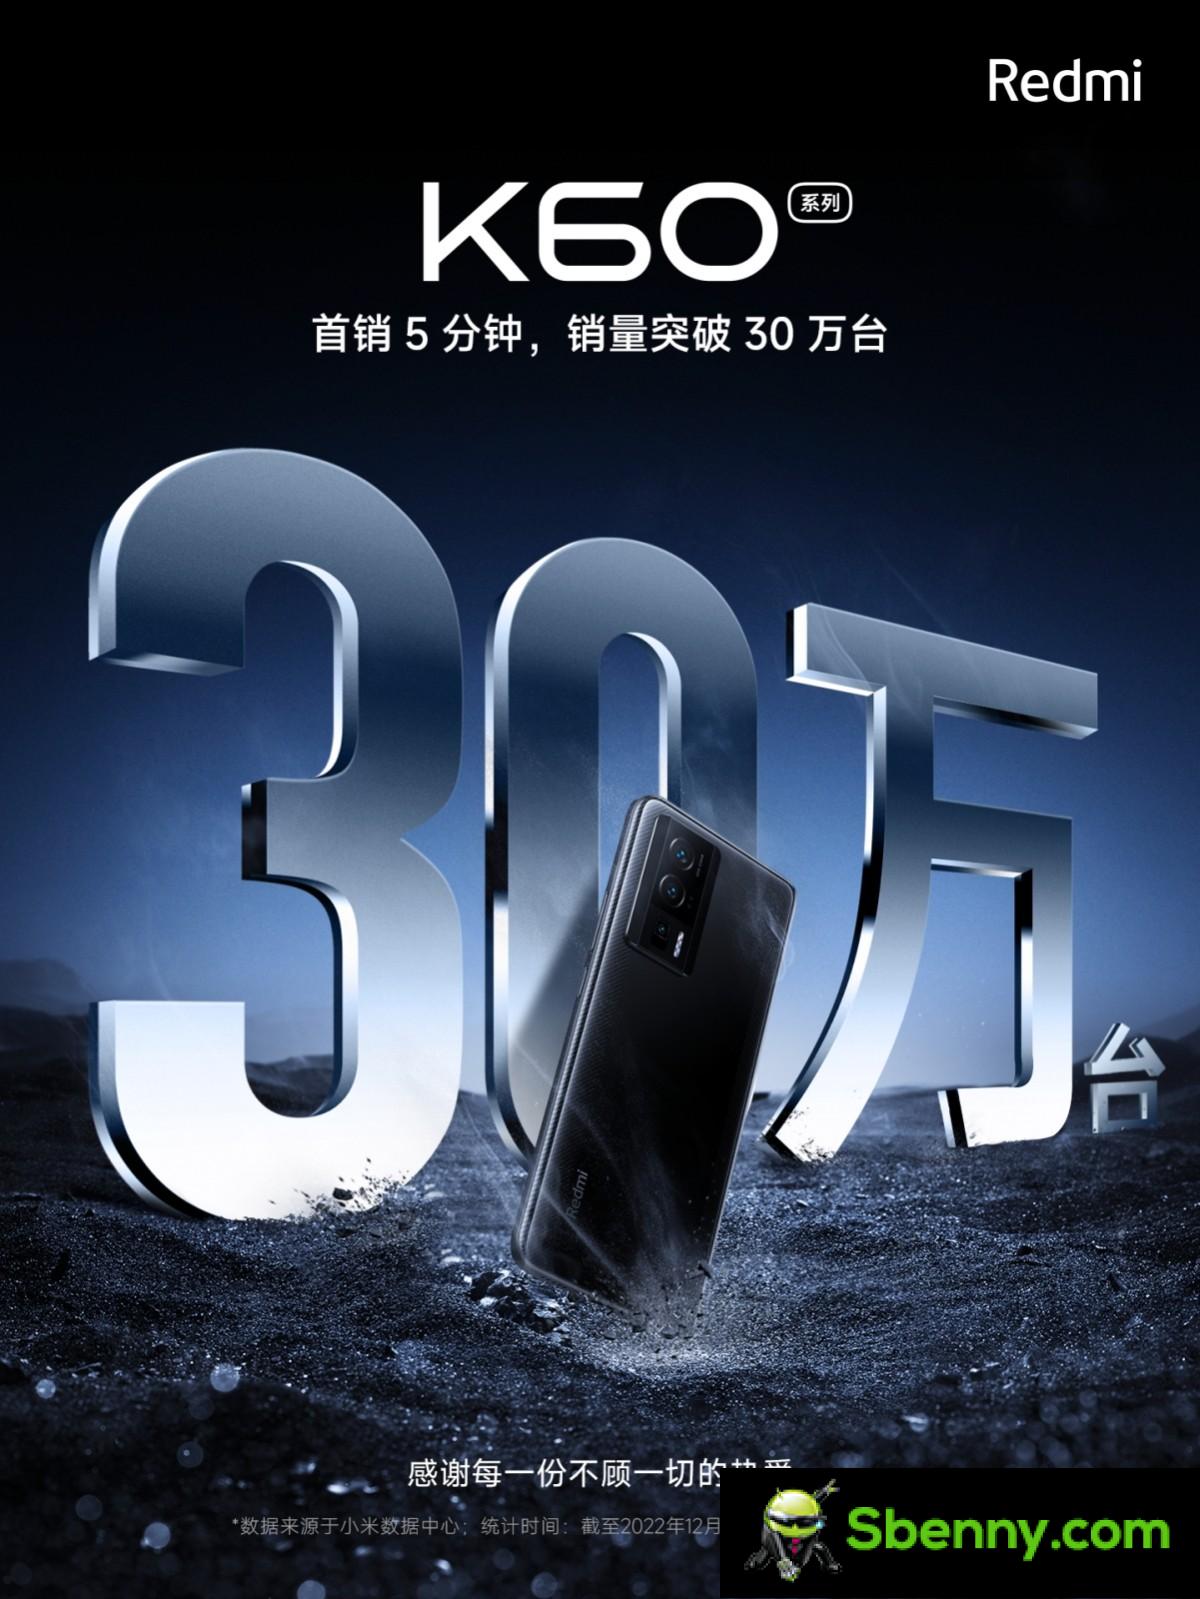 Xiaomi تدفع 300,000 هاتف Redmi K60 في 5 دقائق